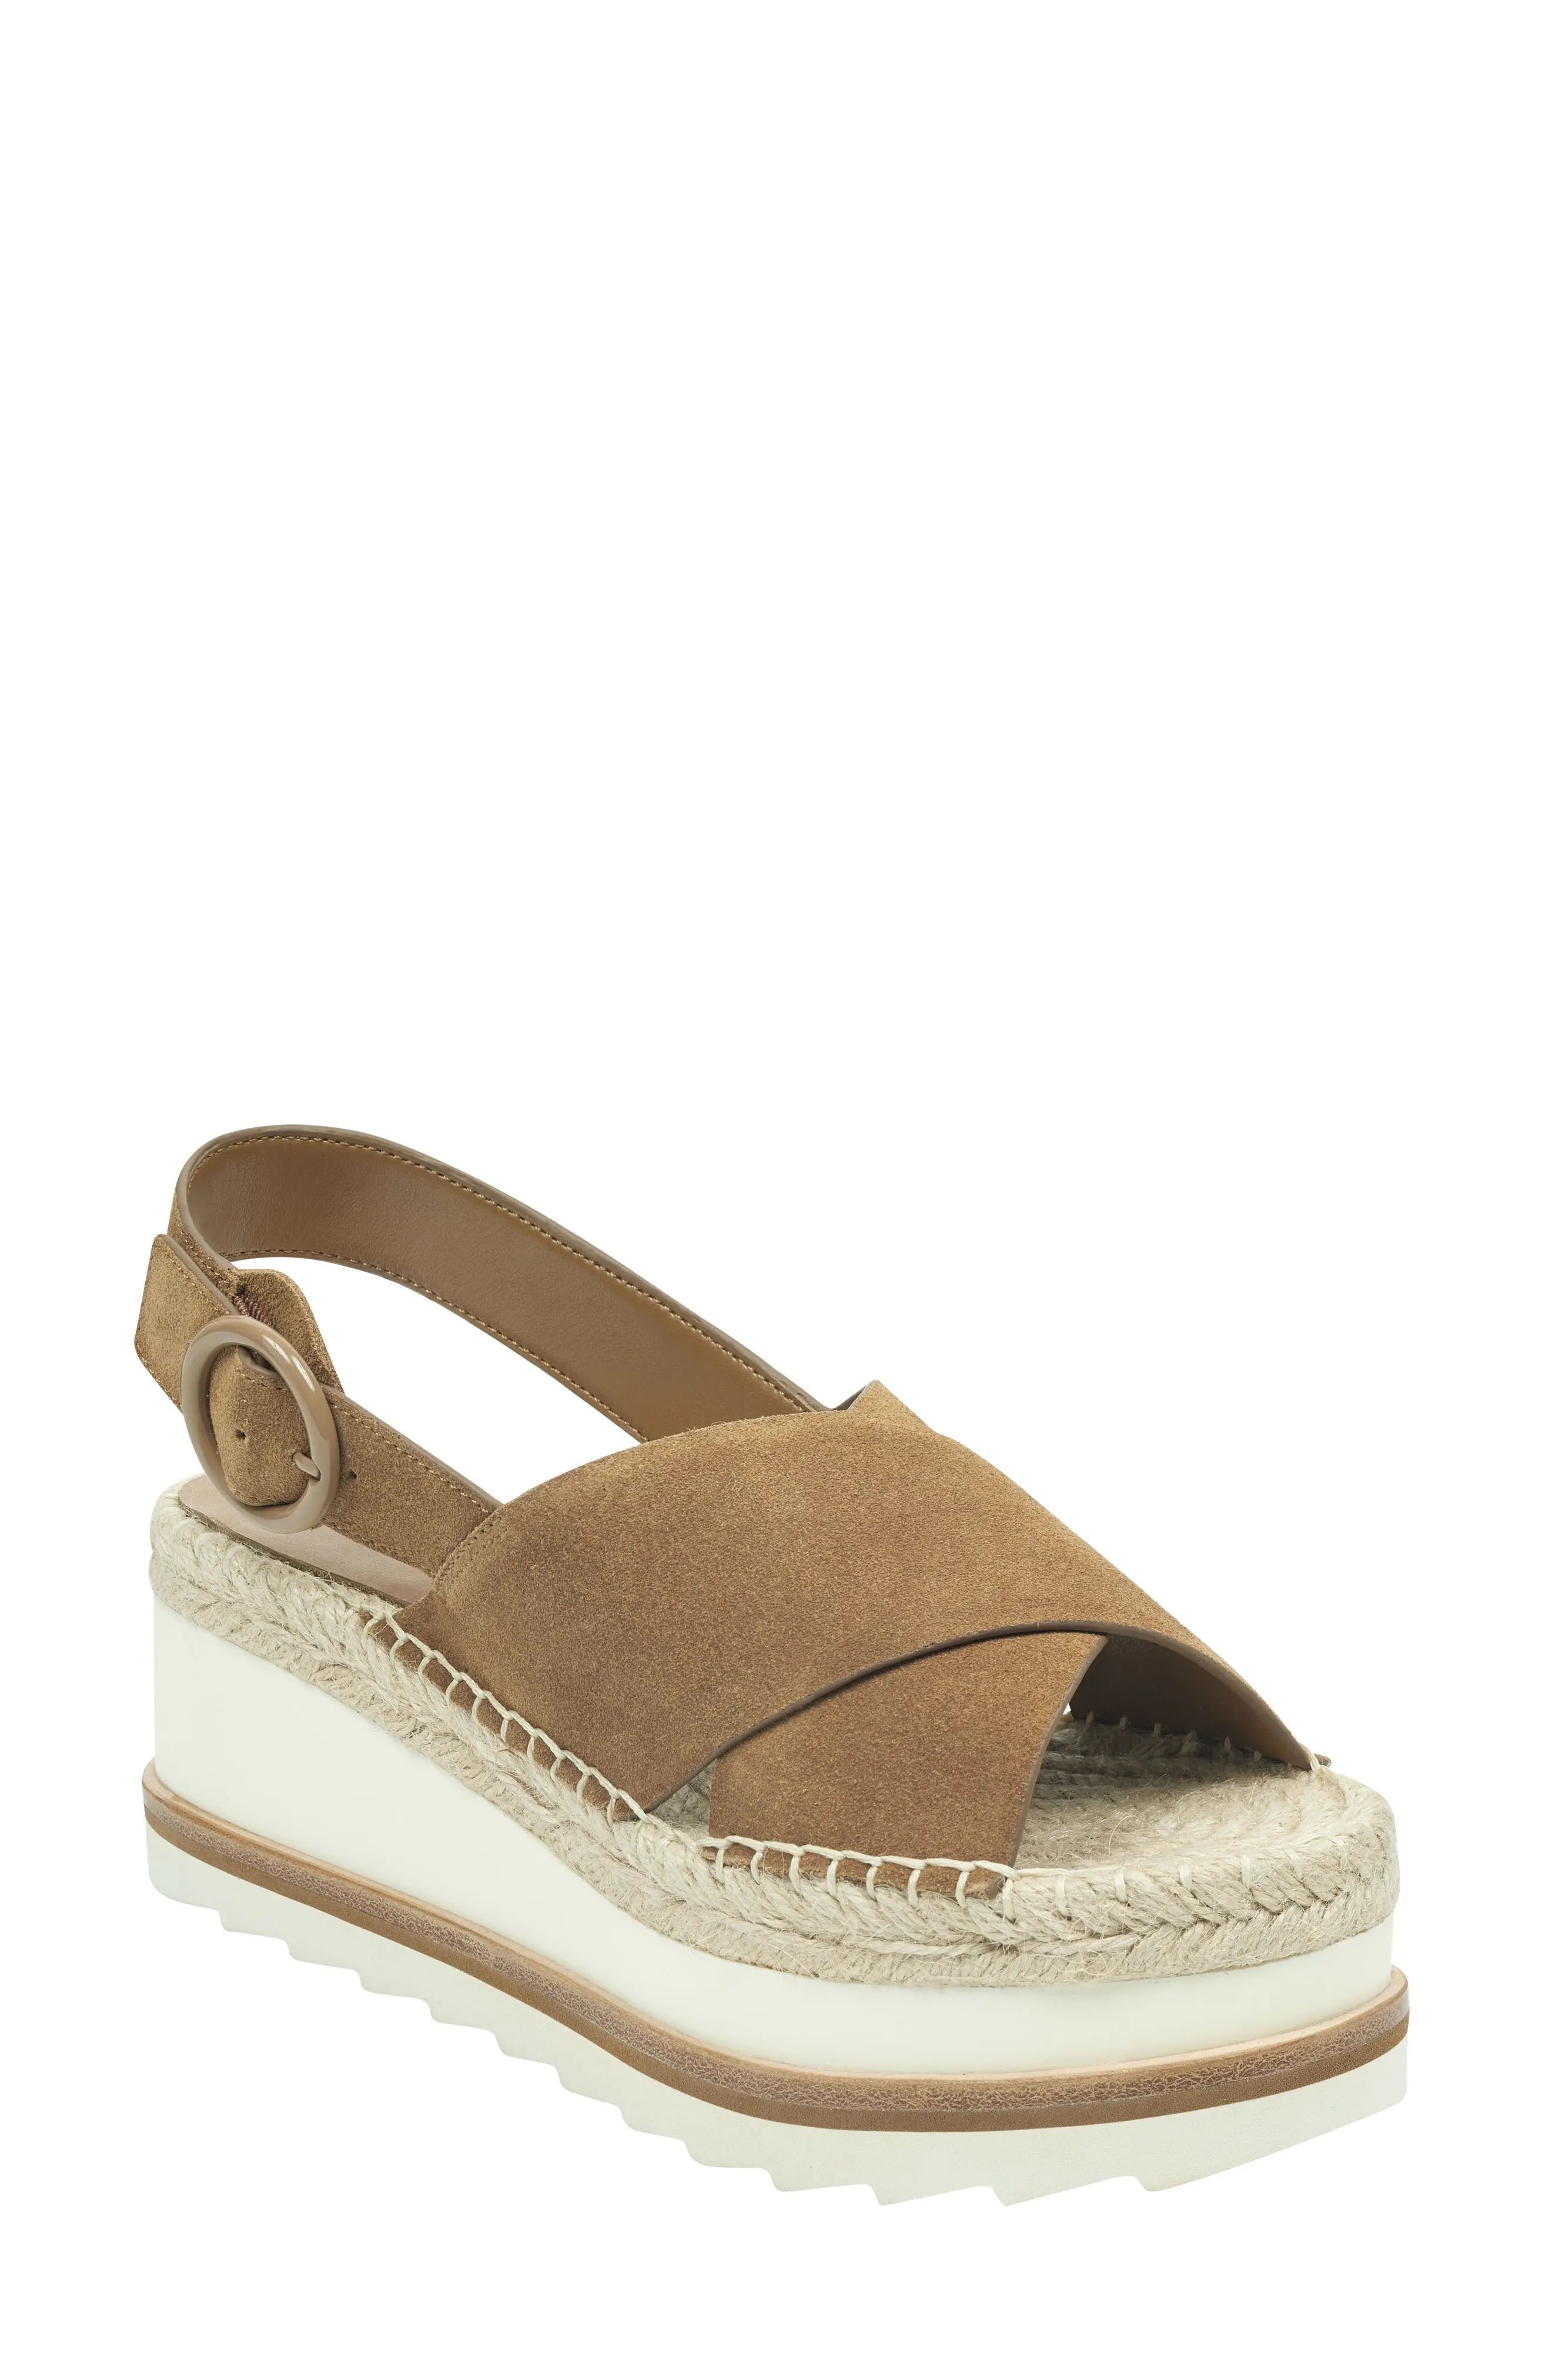 Women's Marc Fisher Ltd Glenna Platform Slingback Sandal, Size 5 M - Brown | Nordstrom